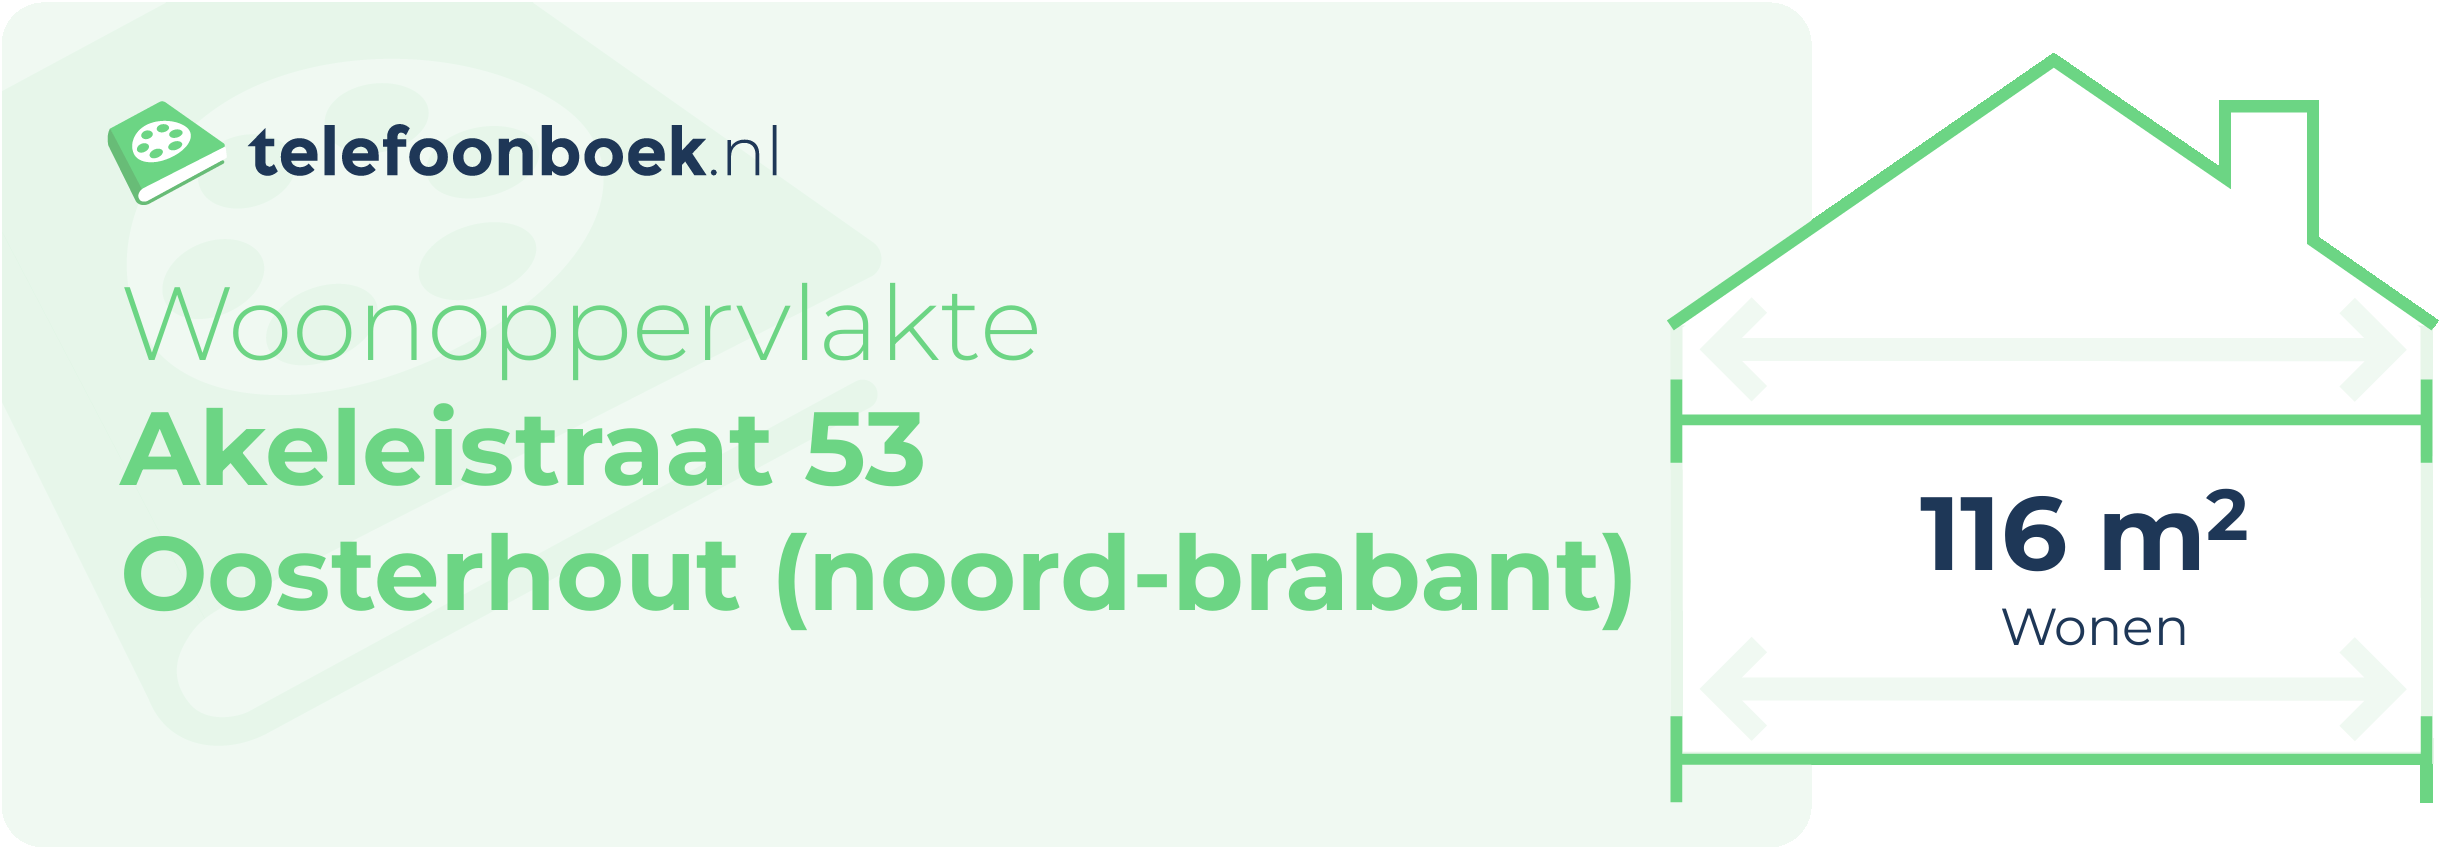 Woonoppervlakte Akeleistraat 53 Oosterhout (Noord-Brabant)